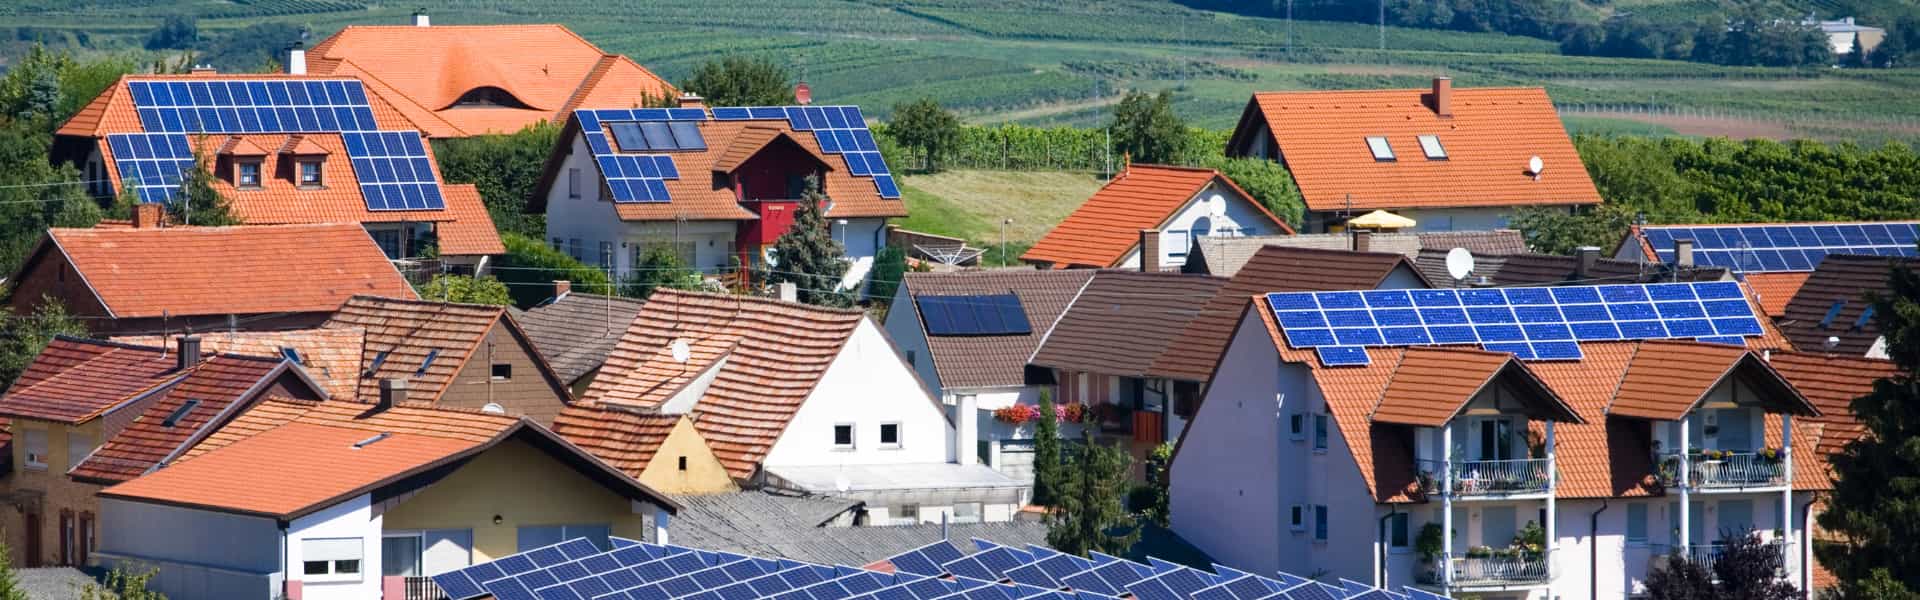 Descubre cómo ahorrar energía con paneles solares y cuidar el medio ambiente